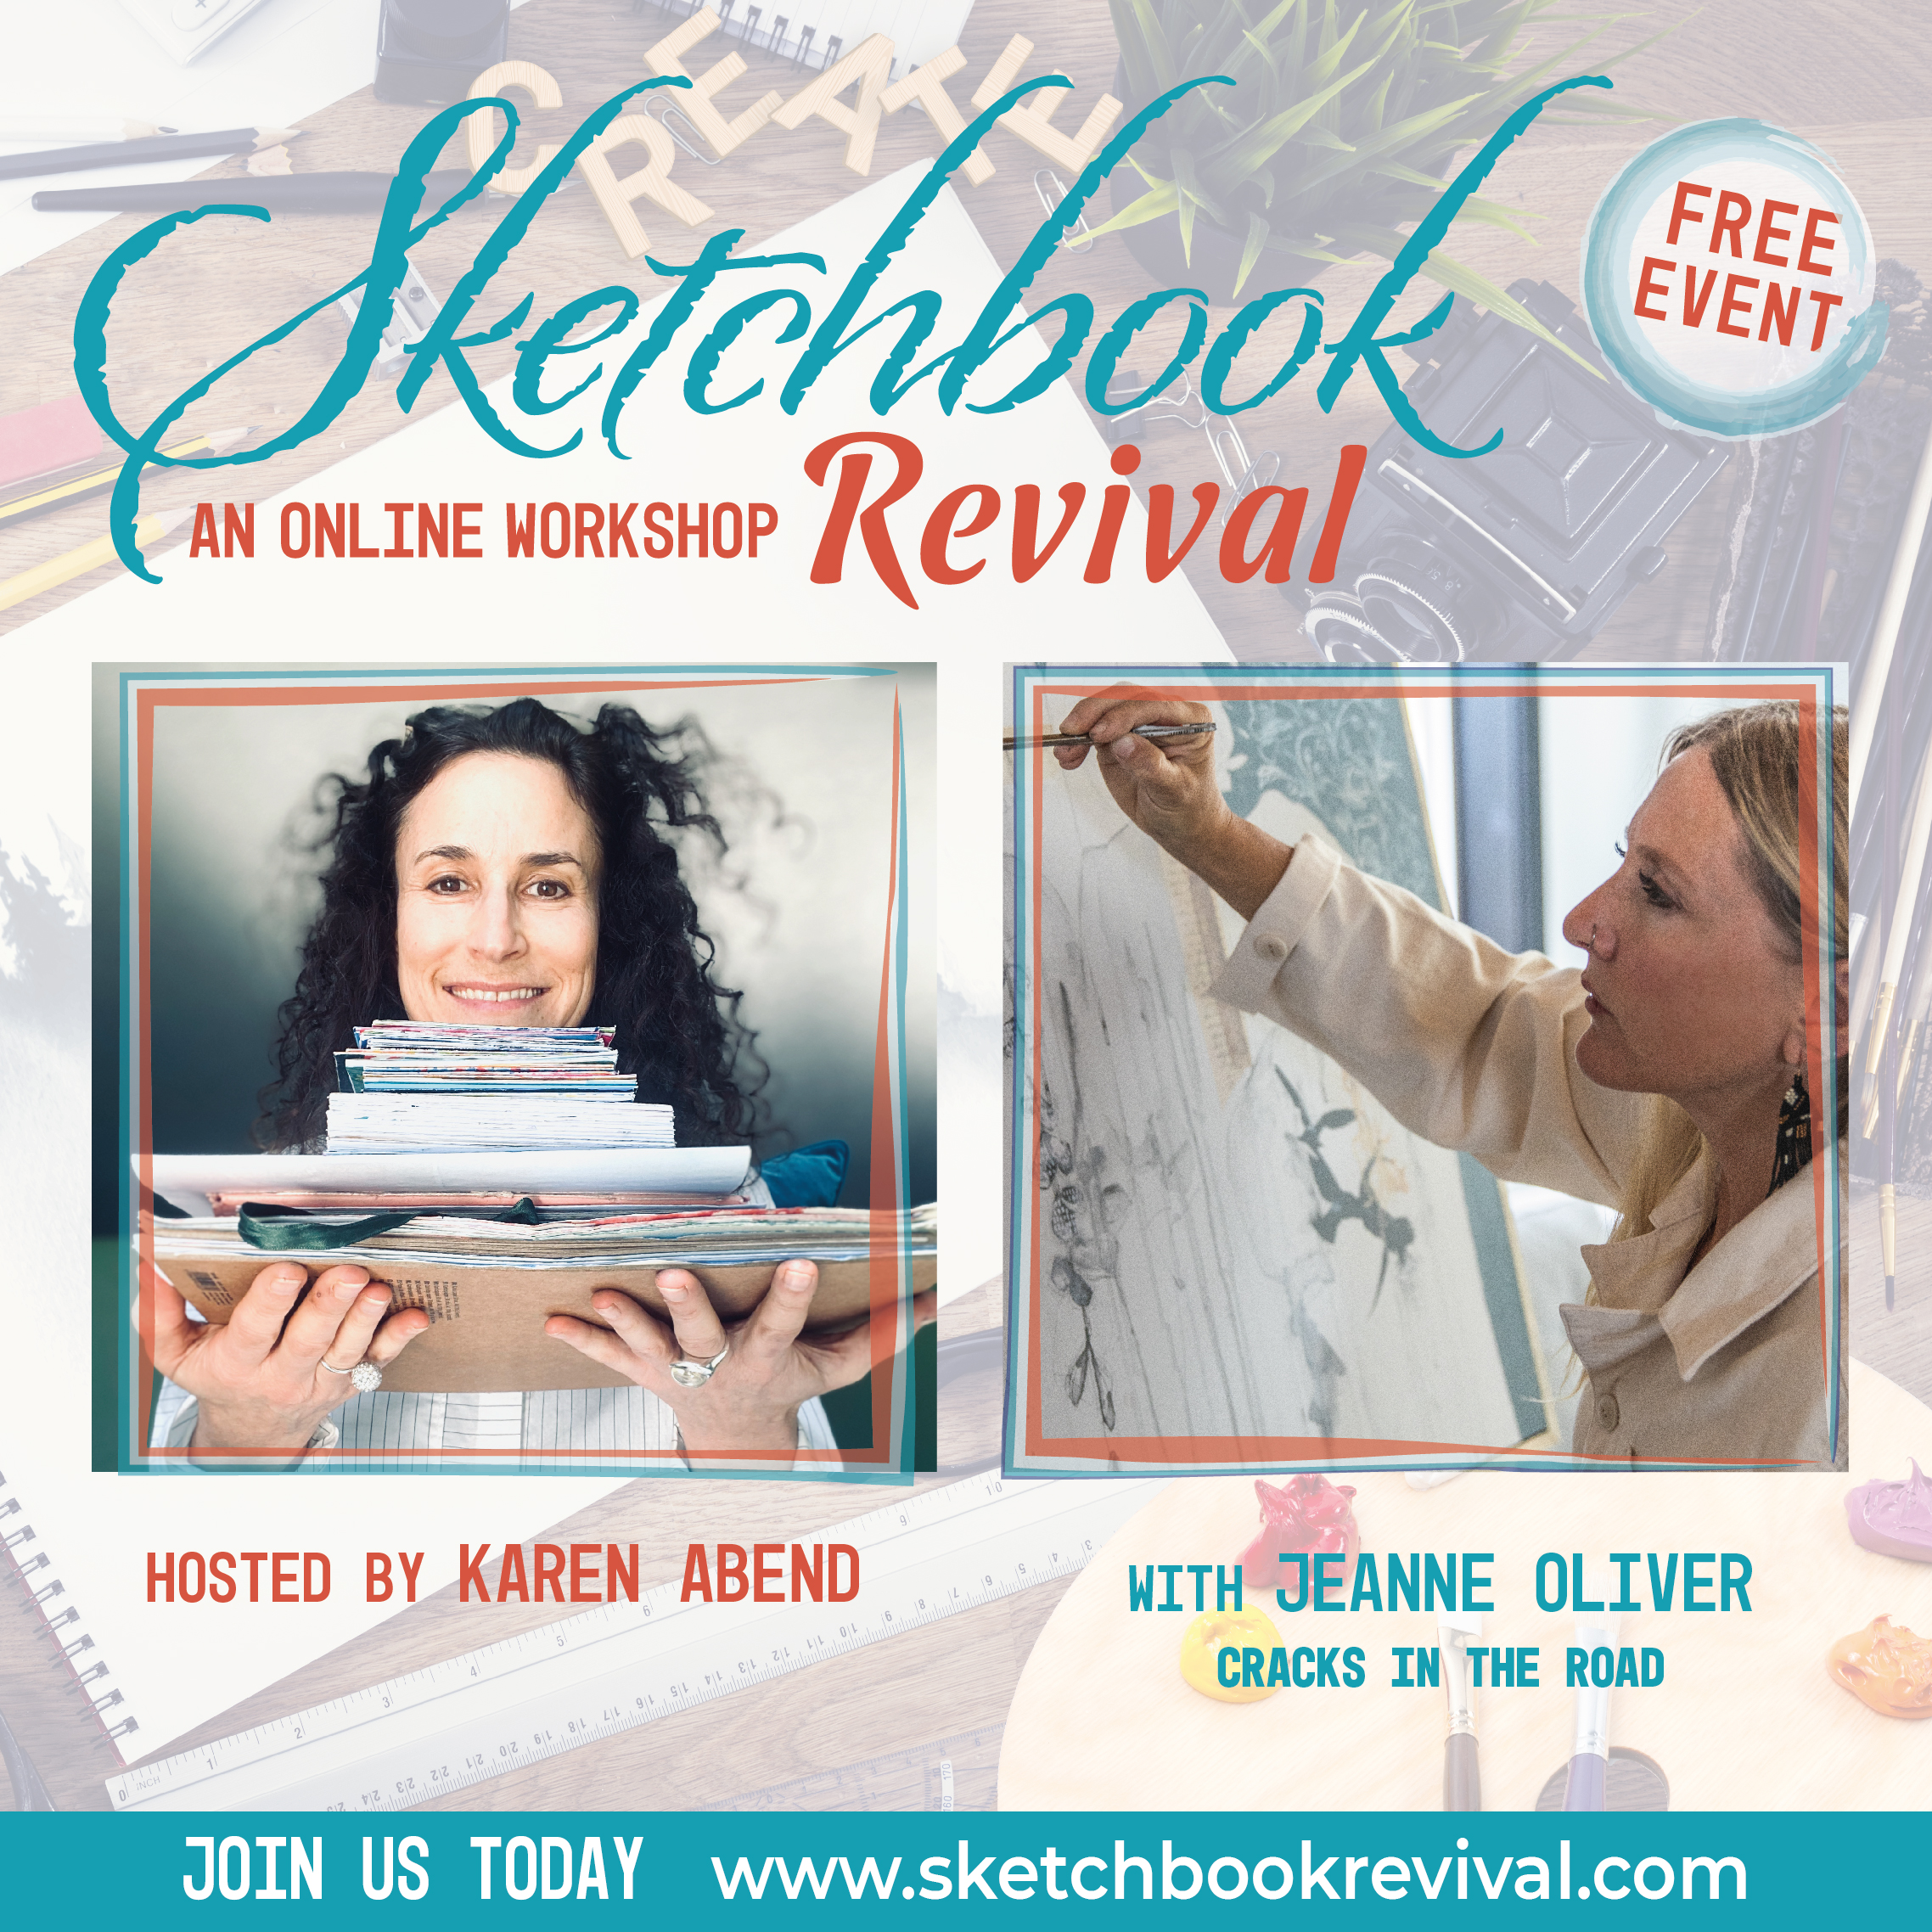 Sketchbook Revival 2021 | This Free Workshop Begins Tomorrow!